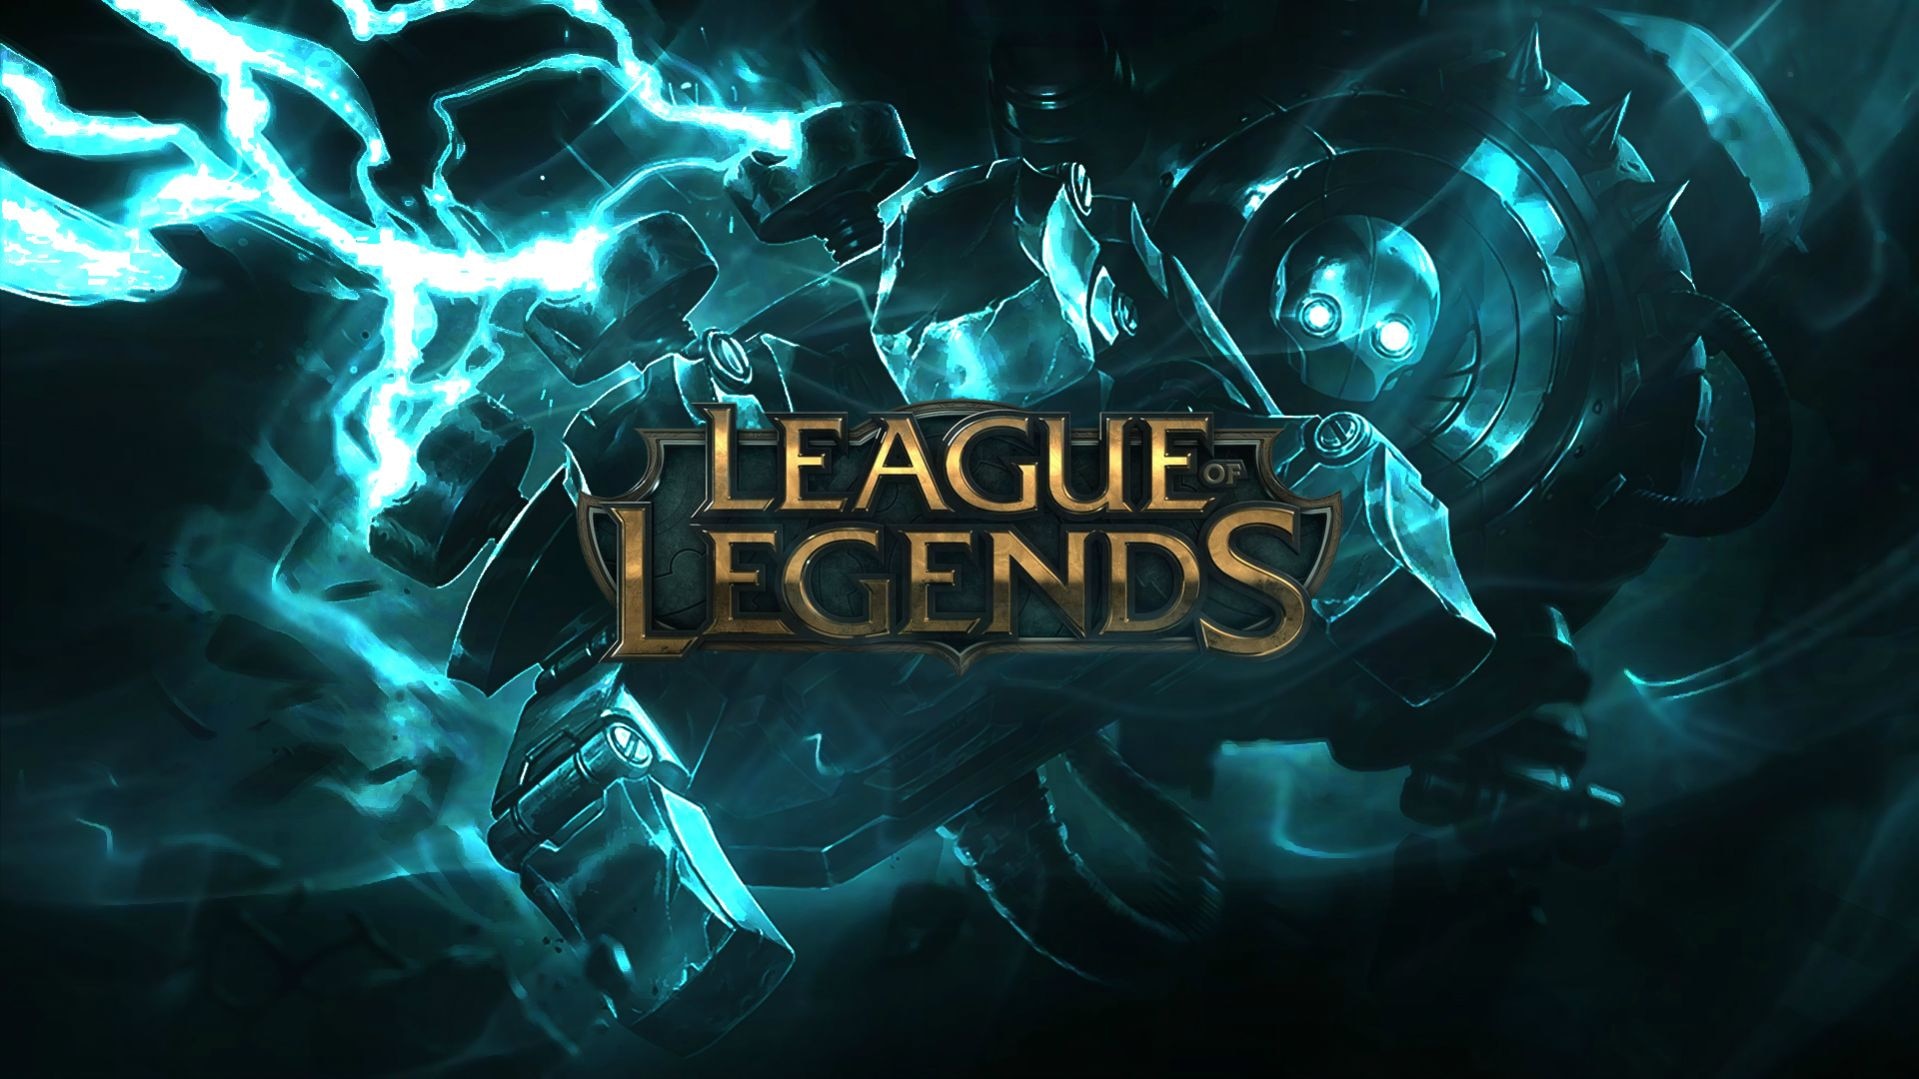 Steam Workshop::League of Legends Skins for Wallpaper Engine